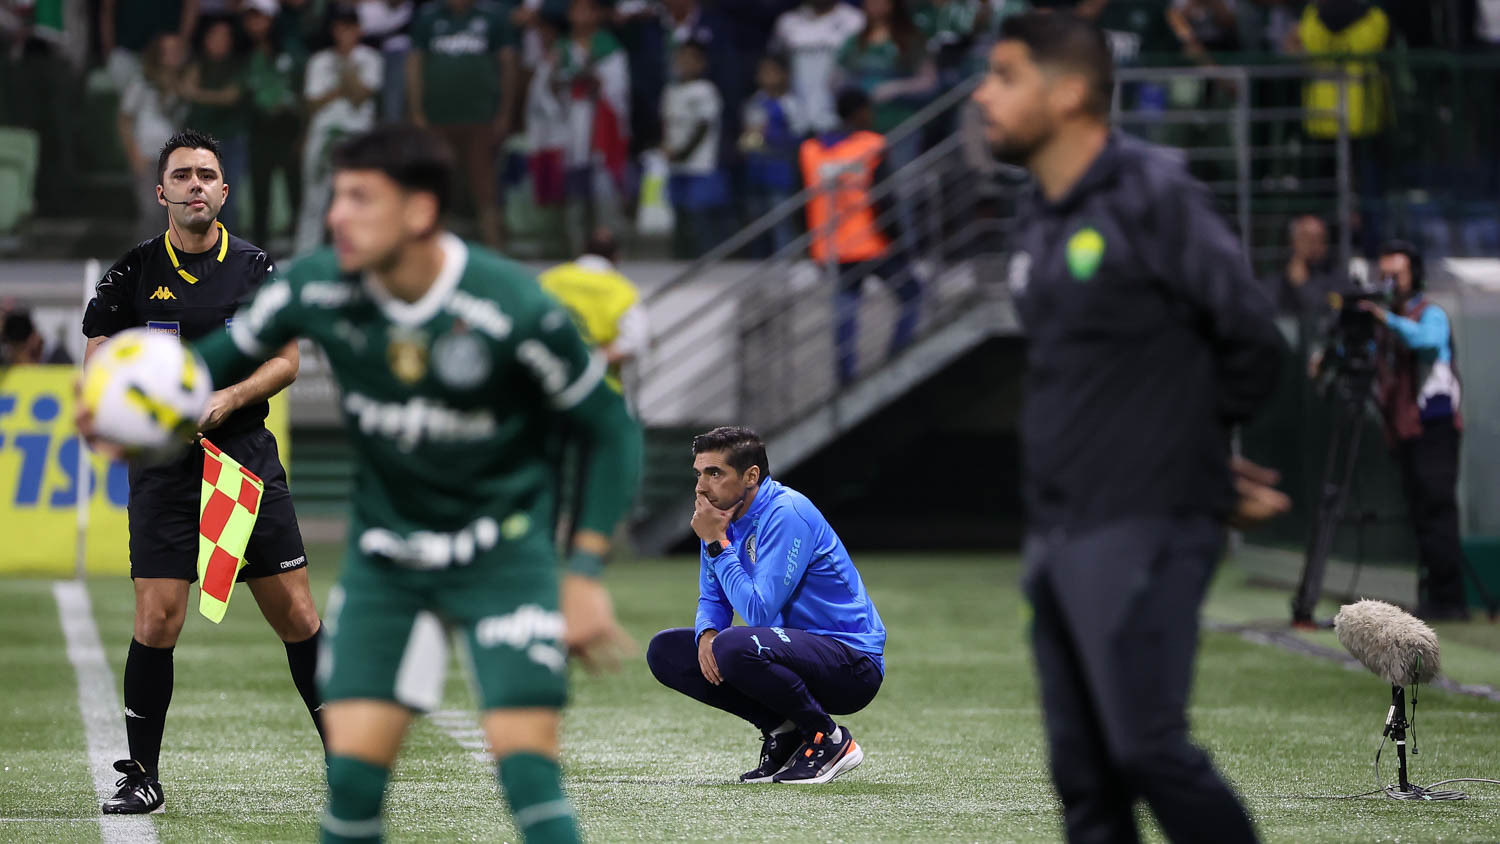 Abel Ferreira sabia que seu time estava esgotado fisicamente. Mudou a estratégia. Futebol posicional